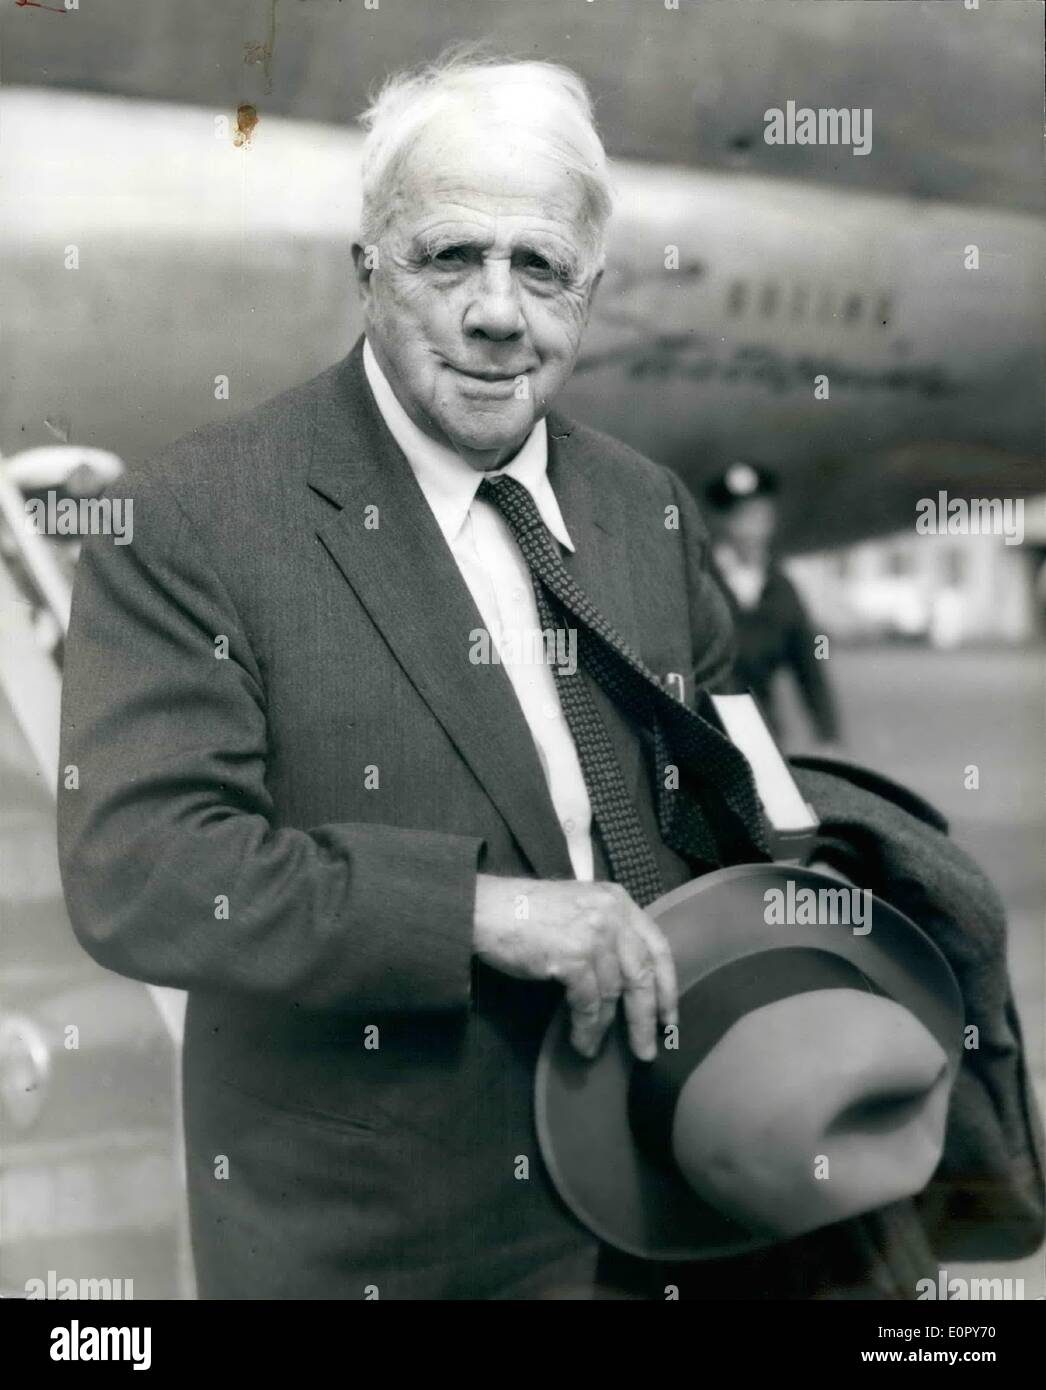 05 mai 1957 - Robert Frost arrive : l'un des plus grands postes, 83 ans, Robert Frost, est arrivé à l'aéroport de Londres aujourd'hui. Il est ici pour recevoir des diplômes honorifiques à Oxford et Cambridge, et donner des lectures de poésie dans les universités britanniques. Photo : Keystone montre- M. Robert Frost vu après son arrivée à l'aéroport de Londres à partir de New York aujourd'hui. Banque D'Images